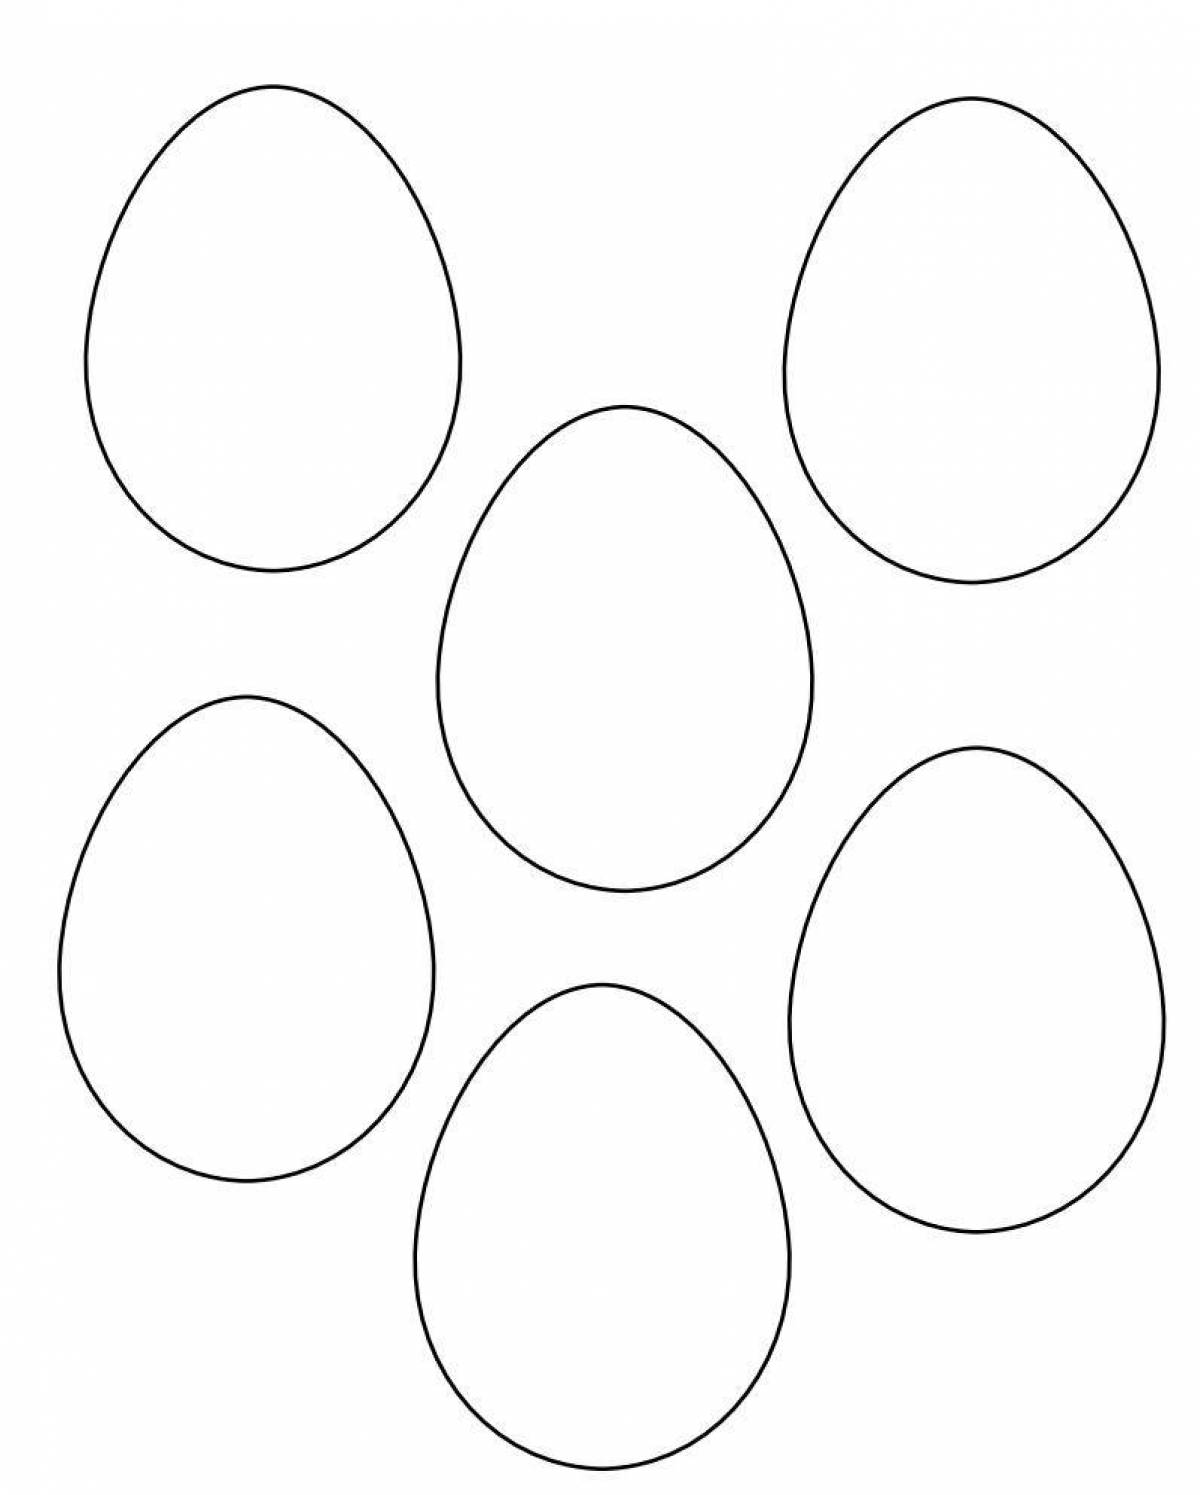 Прекрасная страница раскраски куриных яиц